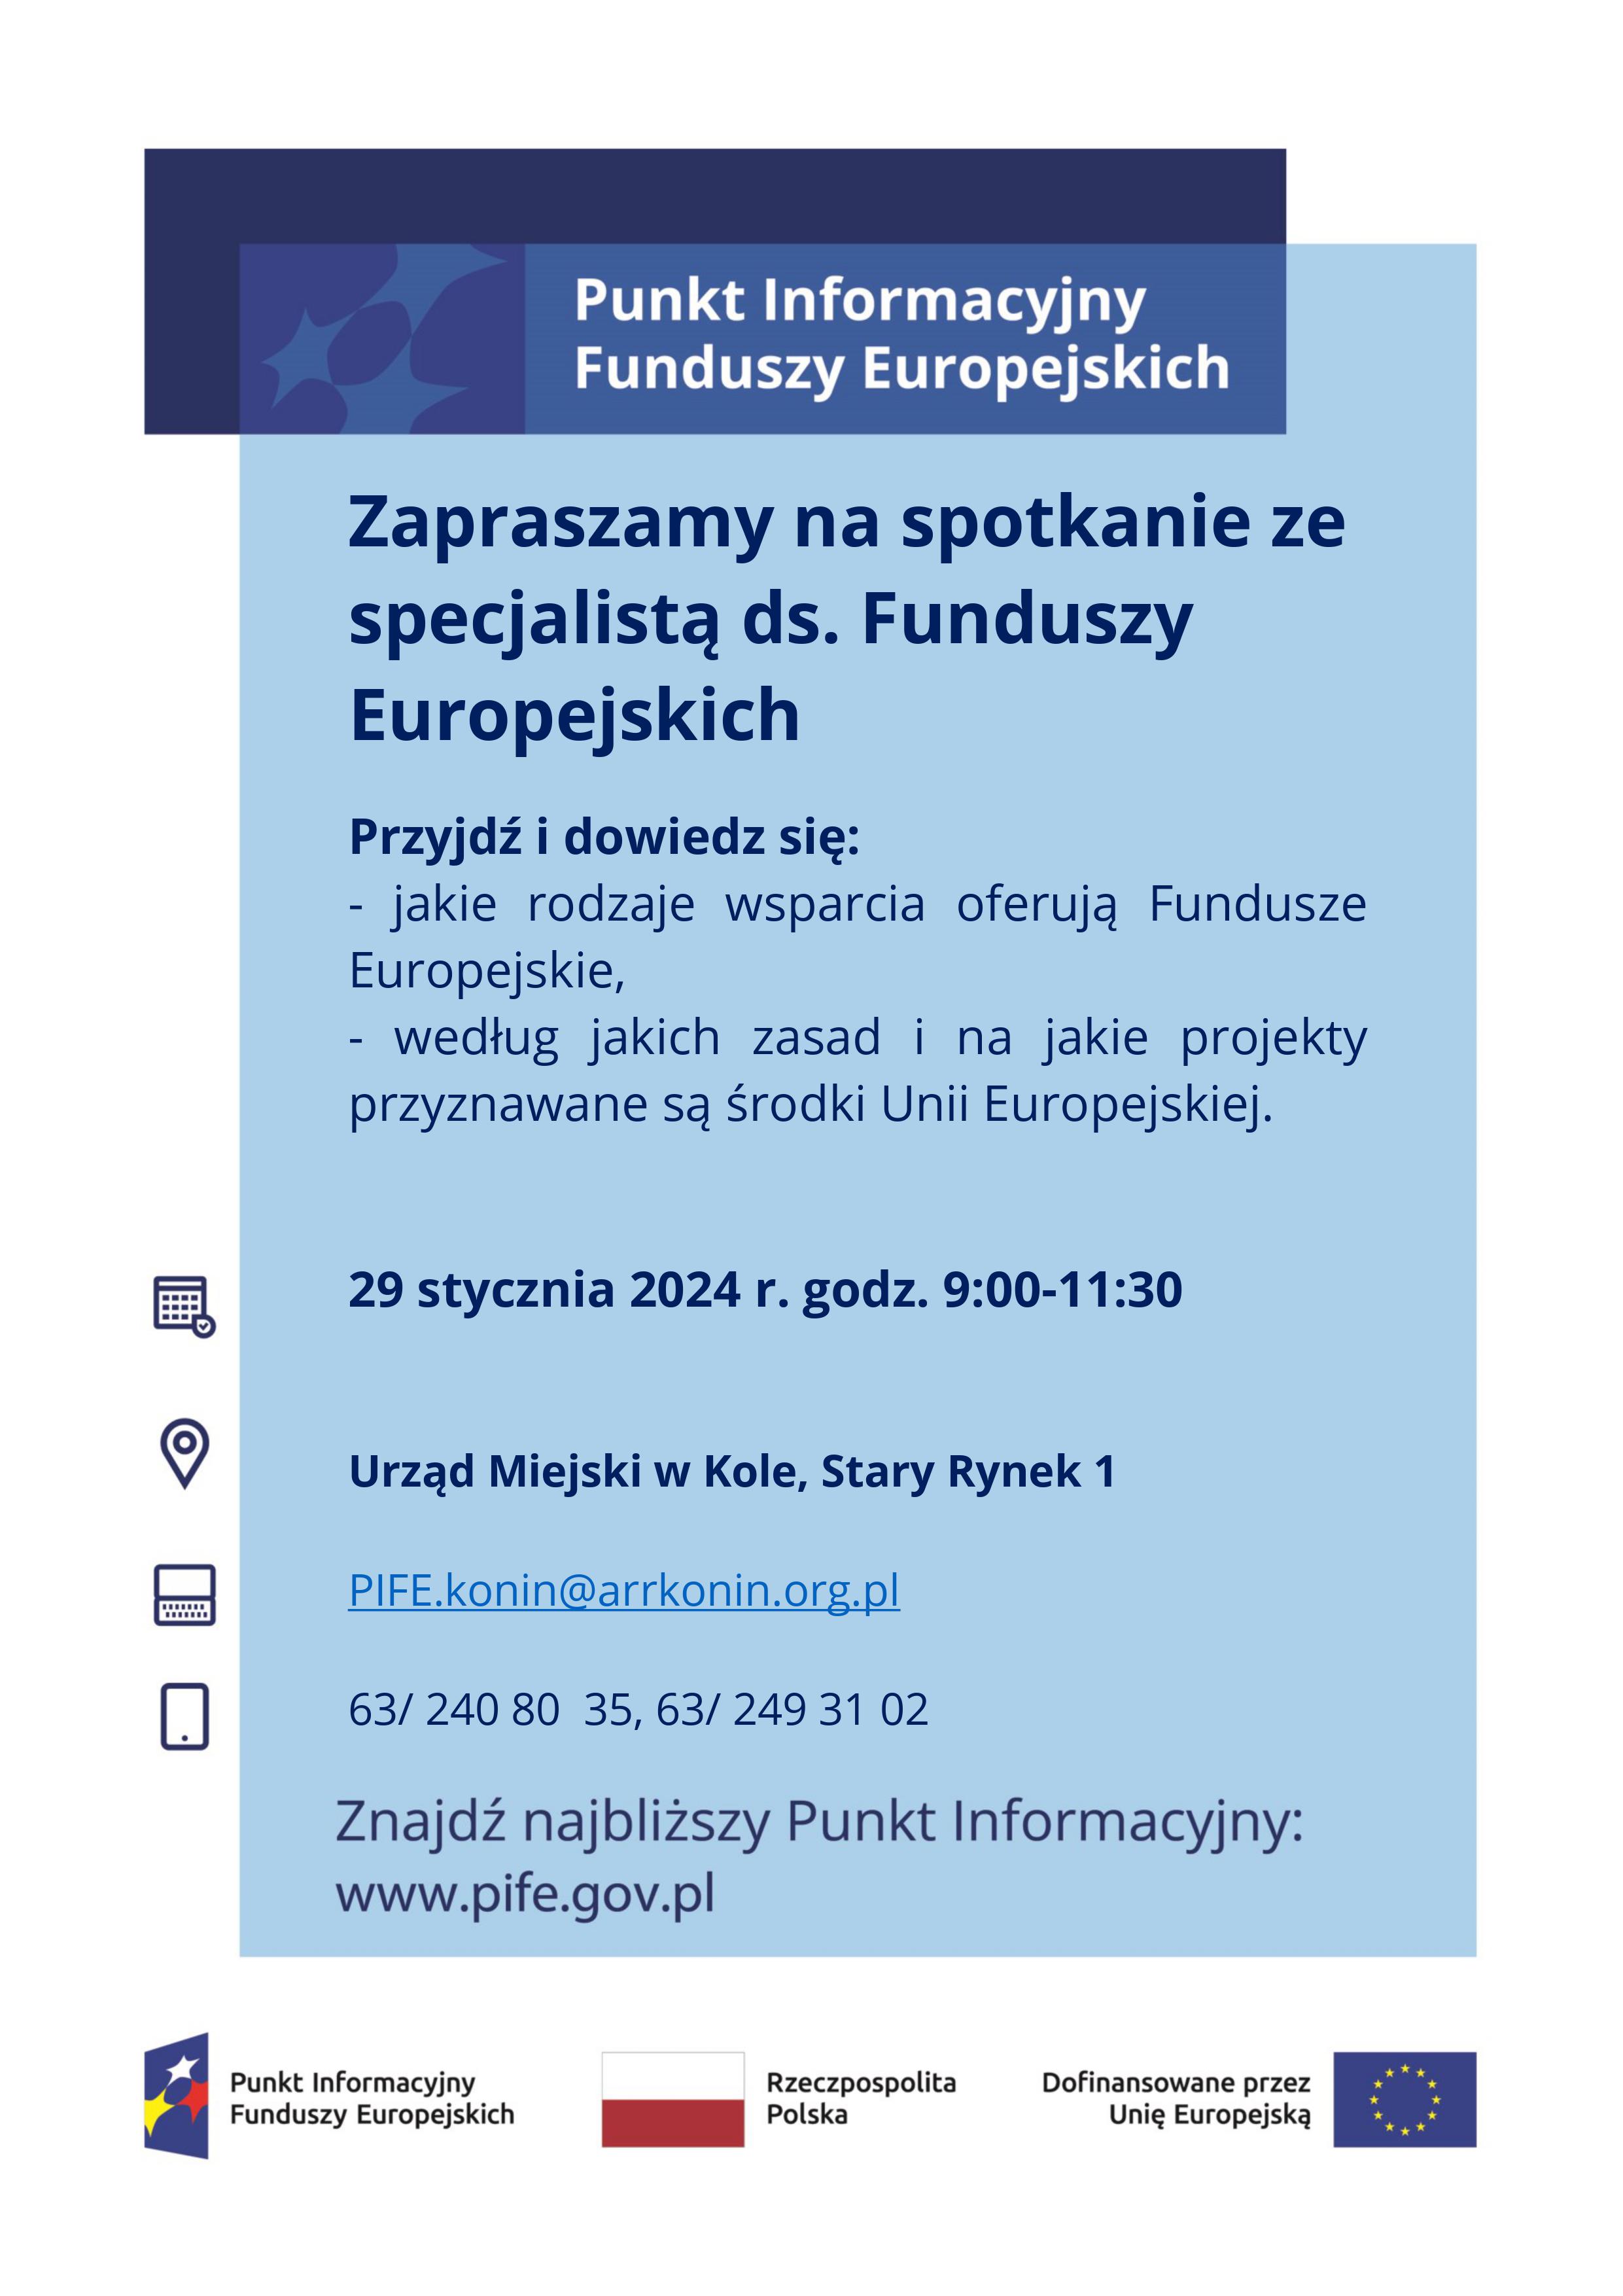 Infografika Mobilny Punkt Informacyjny Funduszy Europejskich w Kole, tekst pod infografiką.